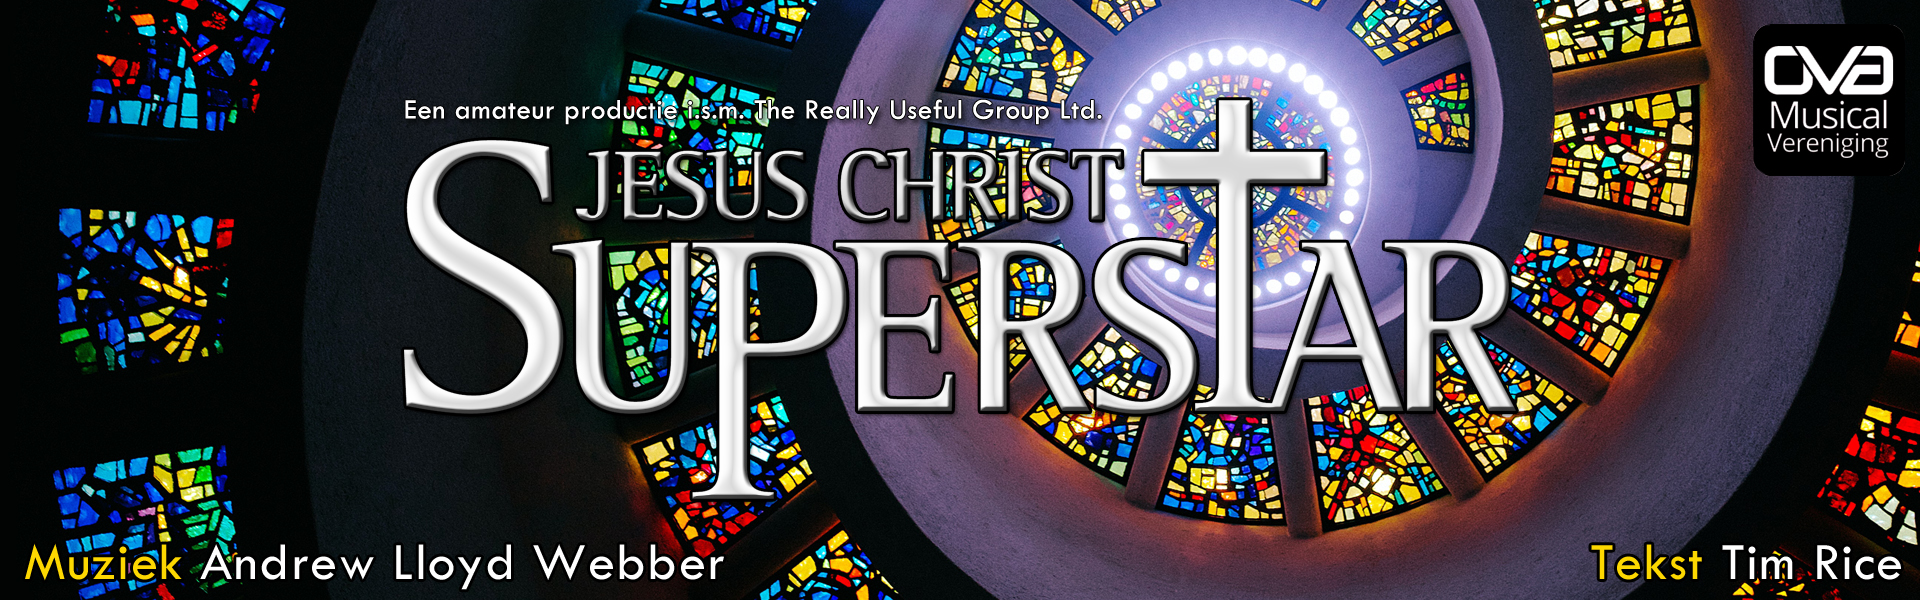 15 en 16 april speelt OVA Jesus Christ Superstar in de Grote zaal van de Shouwburg Amstelveen. Boek nu kaarten.